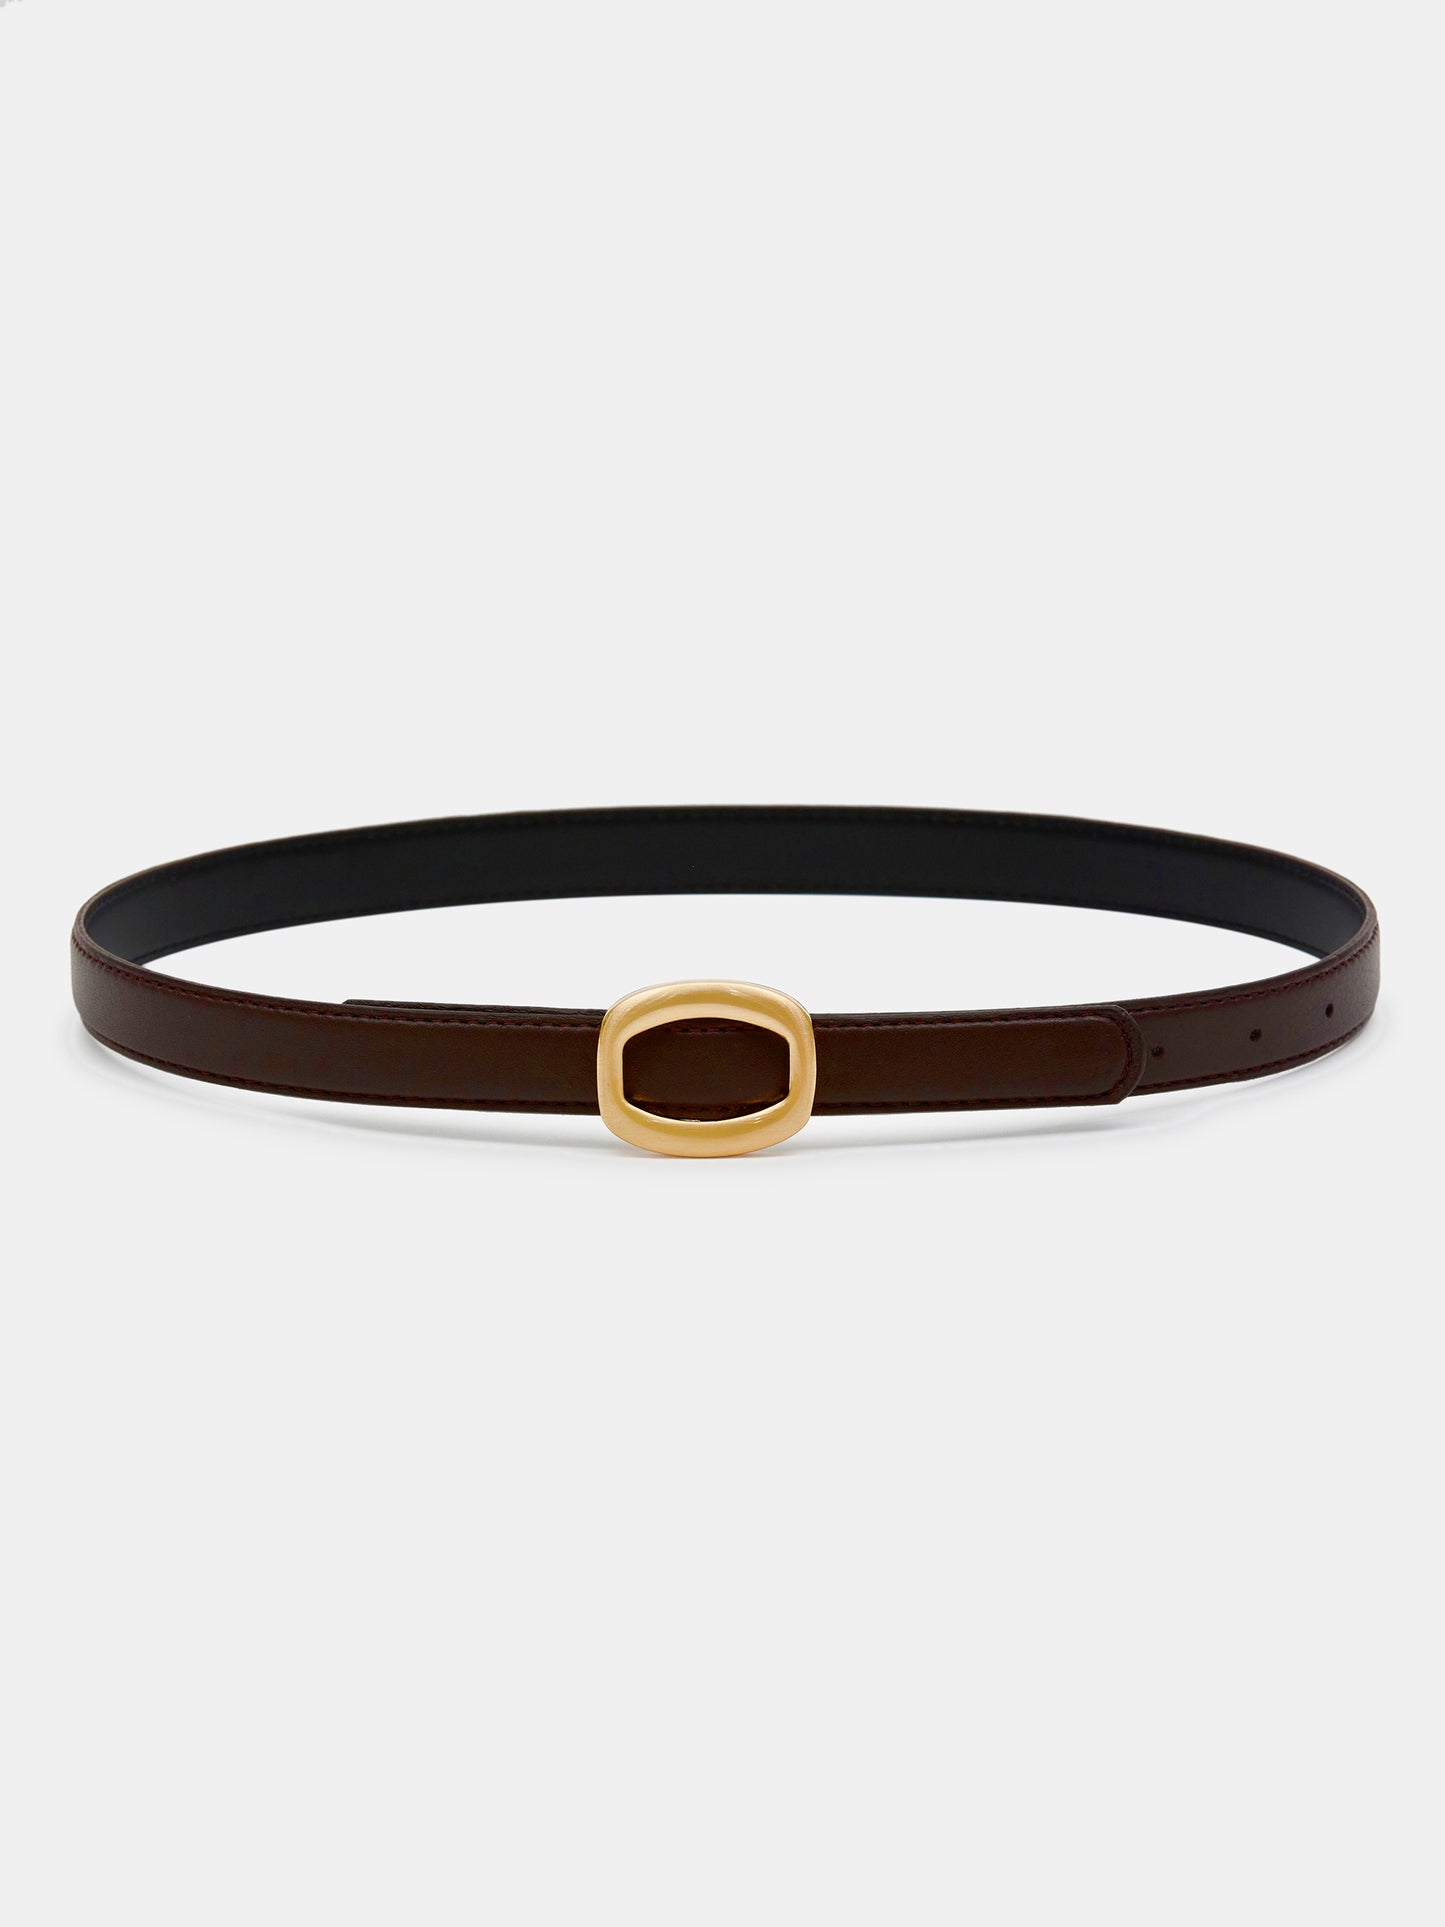 Round Hexagon Leather Belt, Brown/Gold